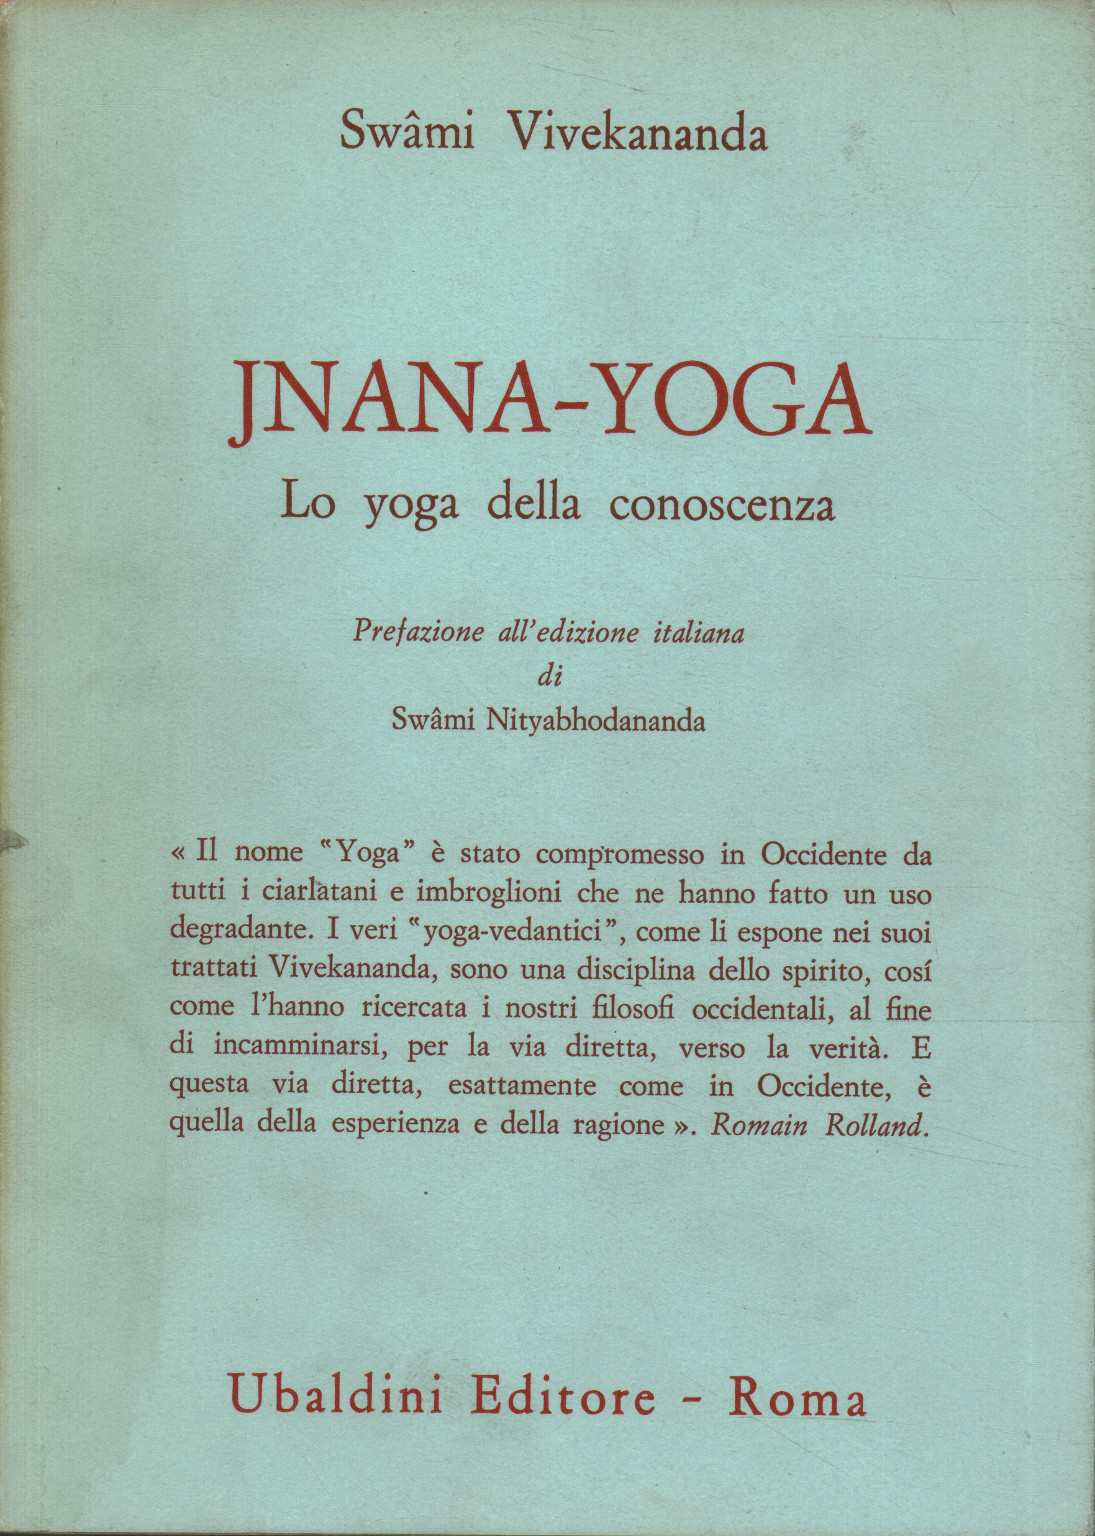 Jnana-Yoga, Swami Vivekananda